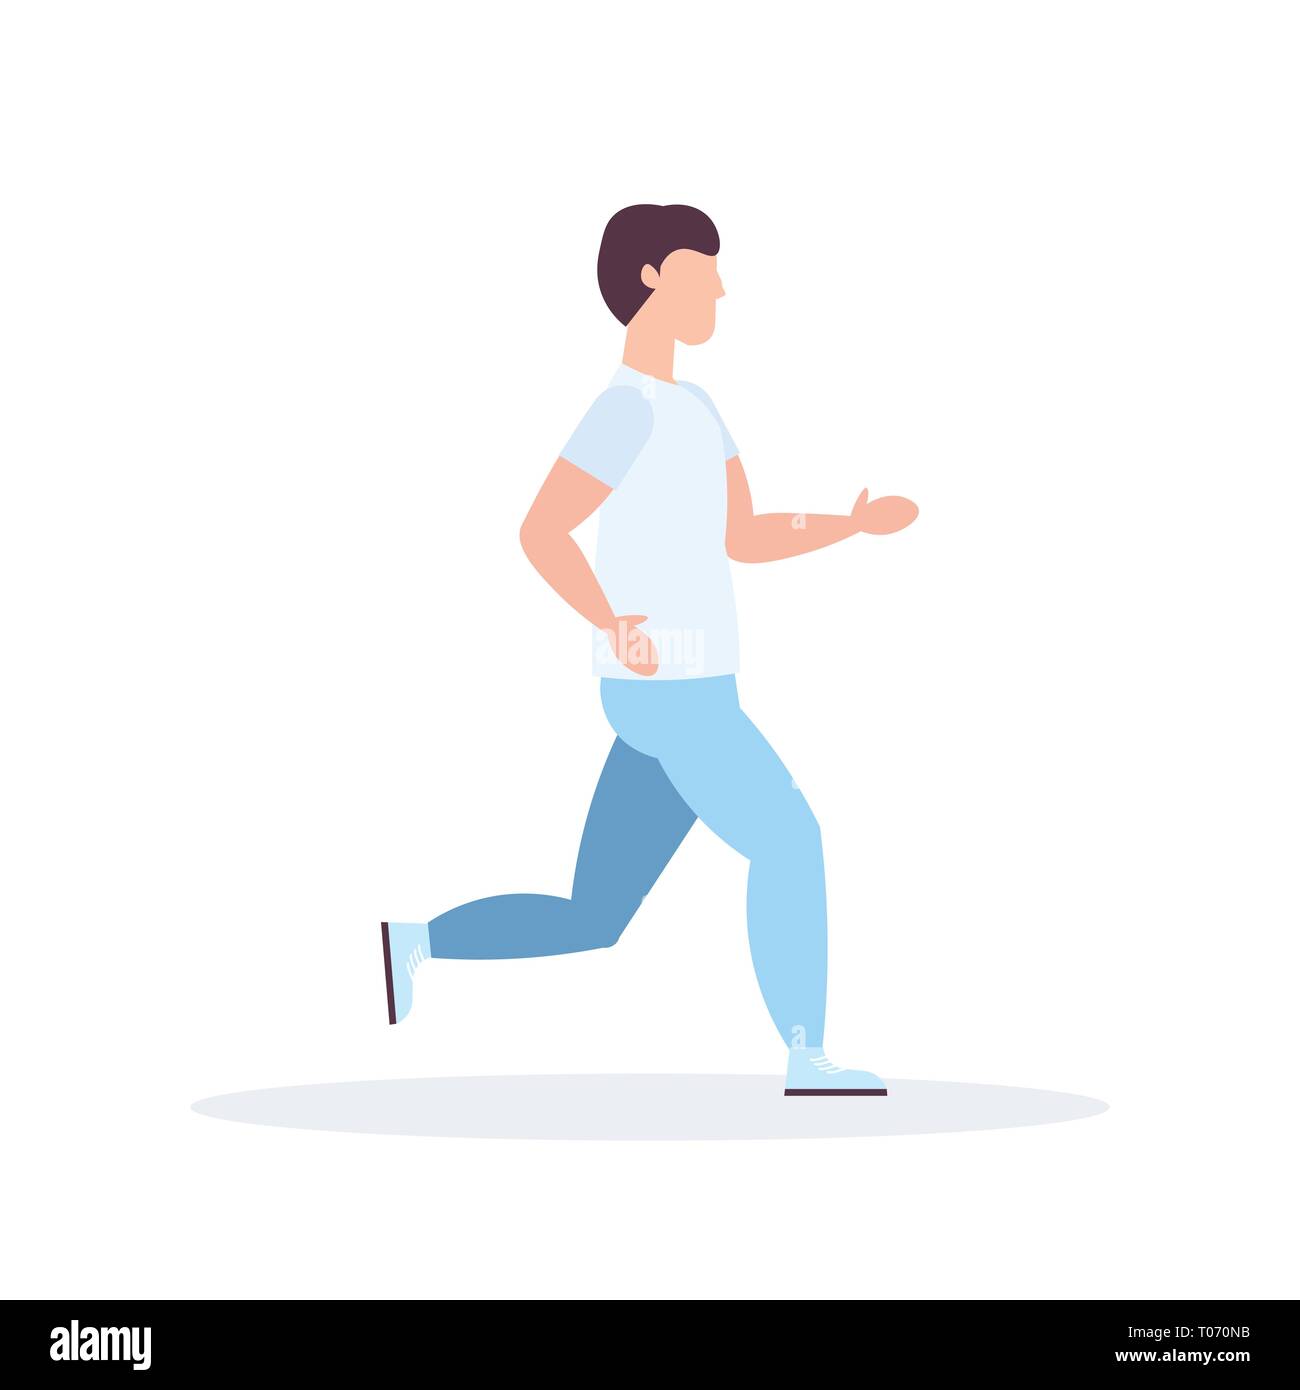 Junge Sportler, die Kerl jogging Active fithess Training gesunder Lebensstil Konzept männliche Zeichentrickfigur in voller Länge flach Stock Vektor